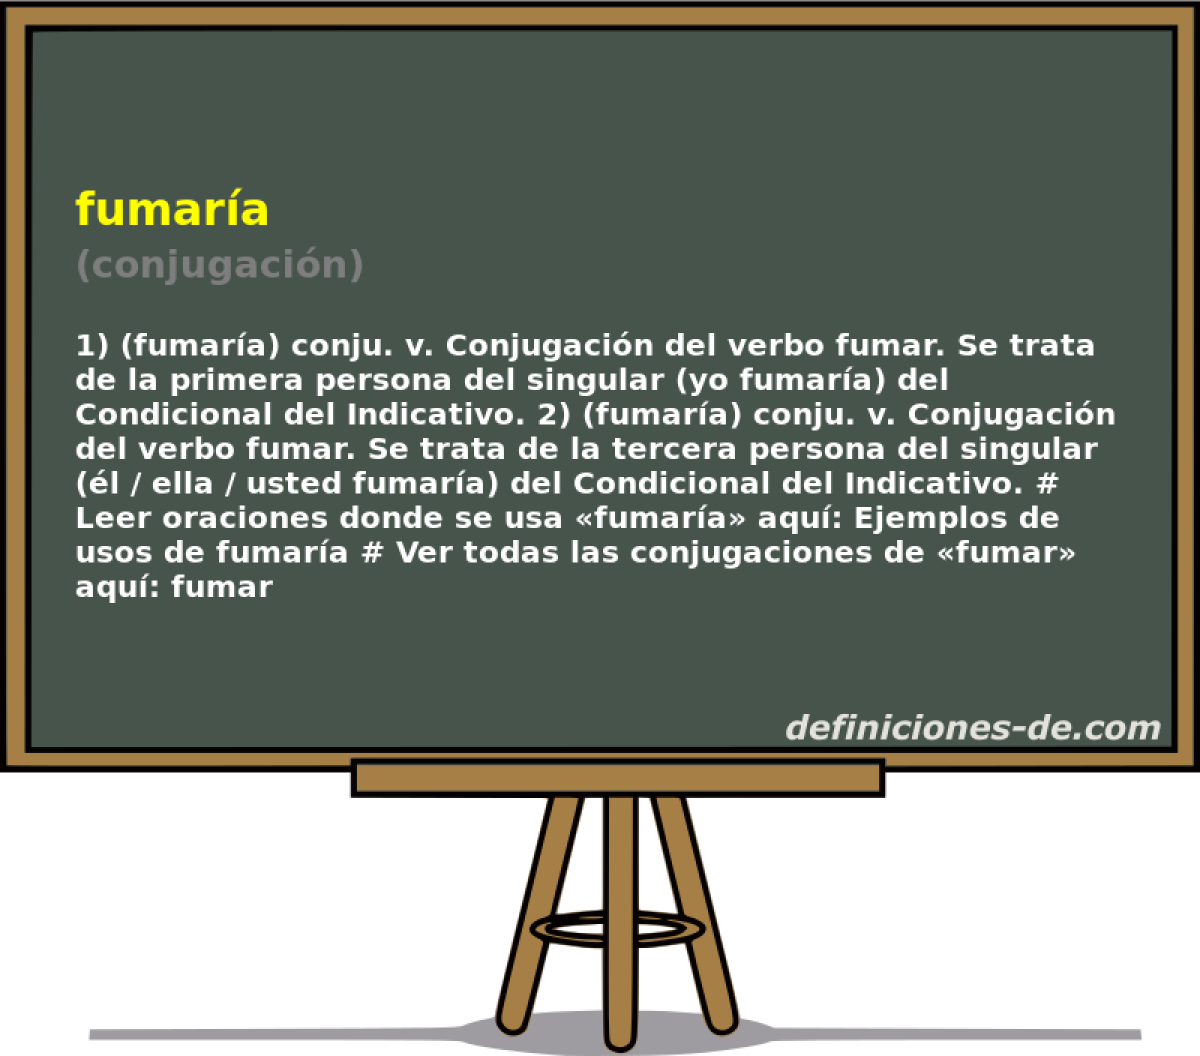 fumara (conjugacin)